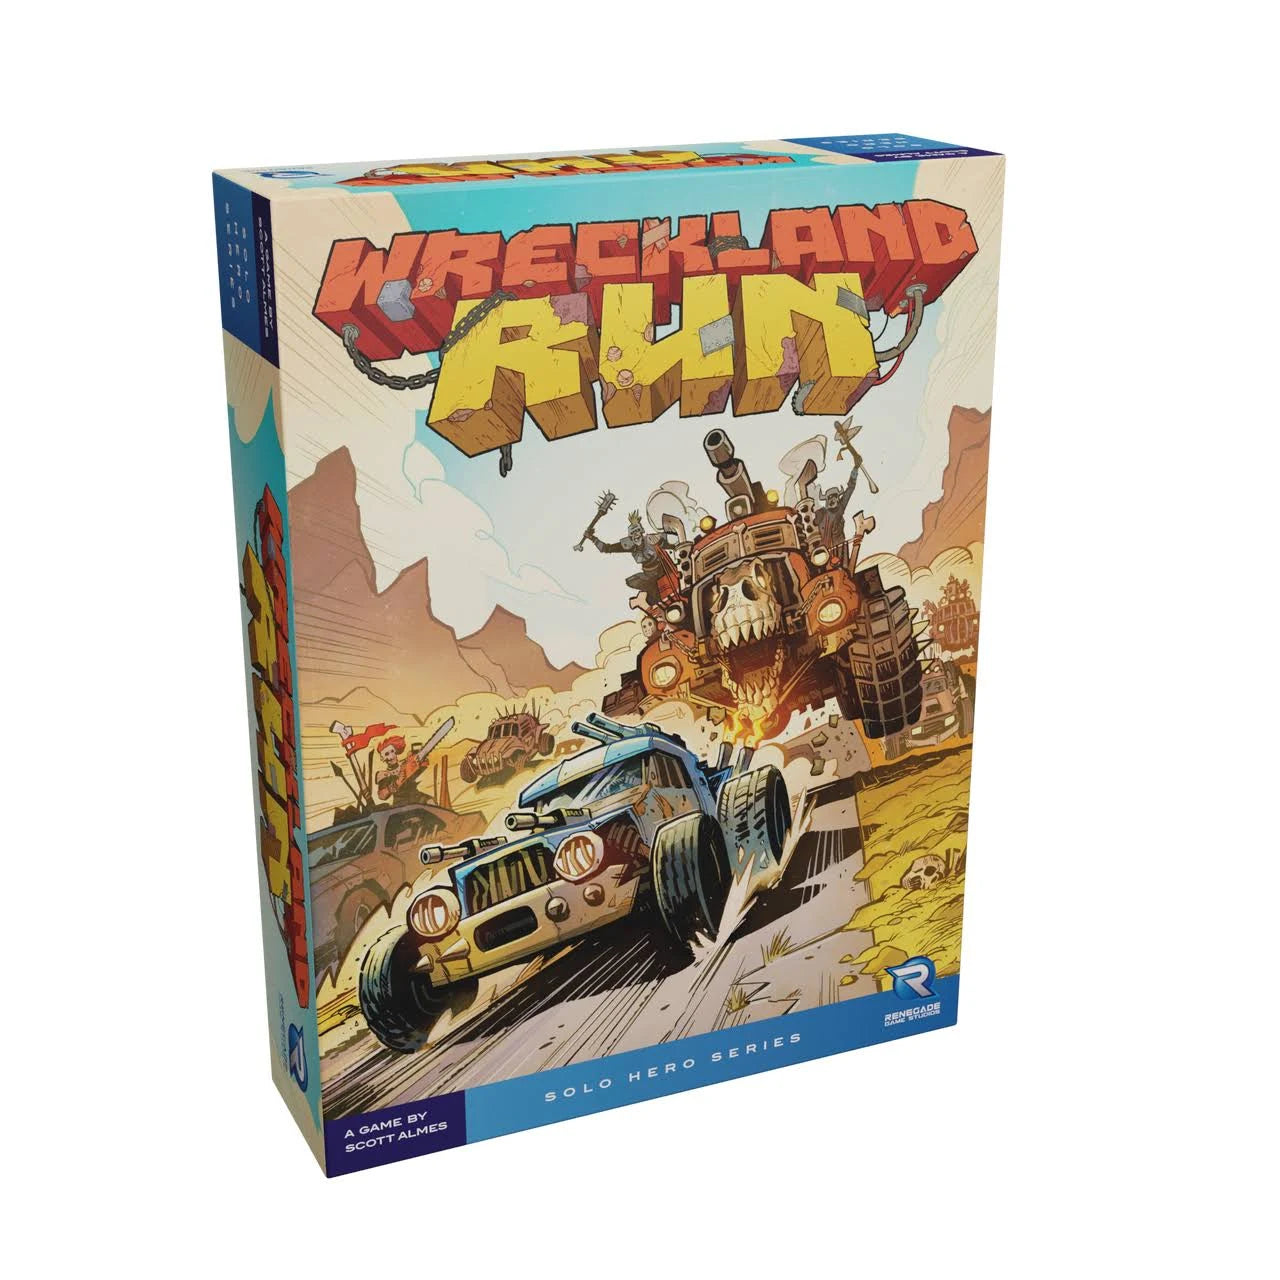 Solo Hero Series: Wreckland Run box